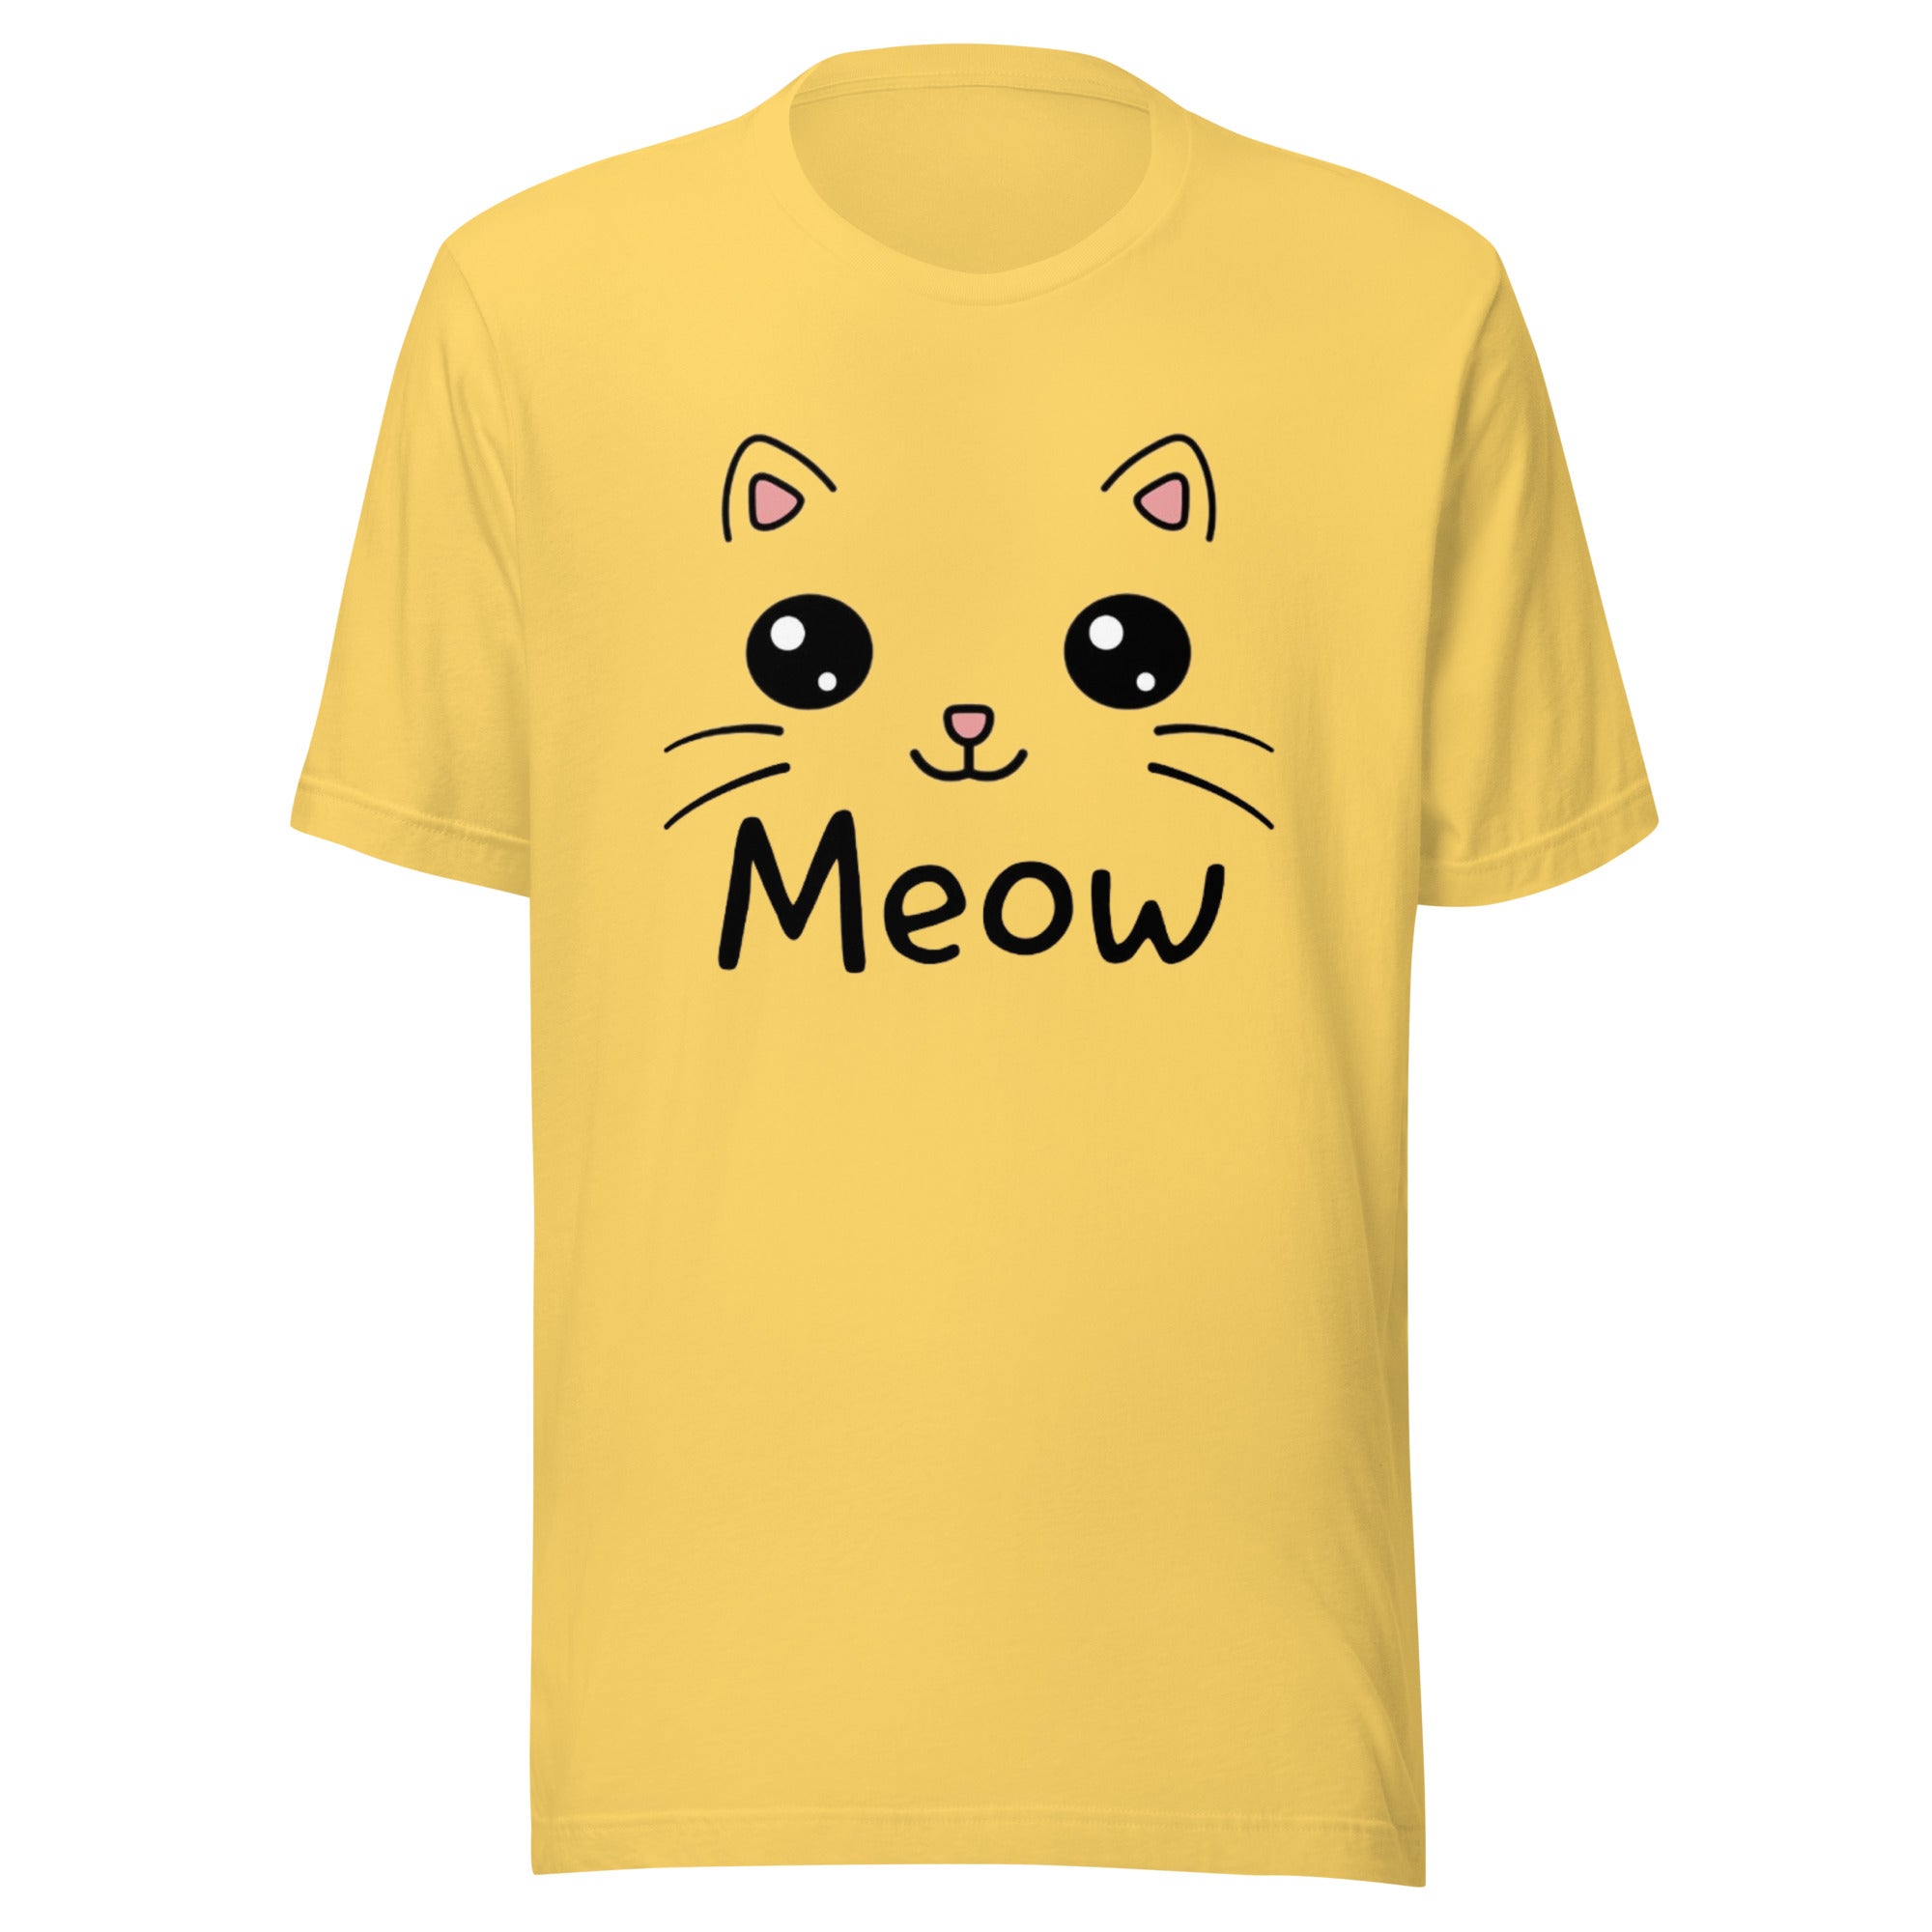 Kawaii cat shirt